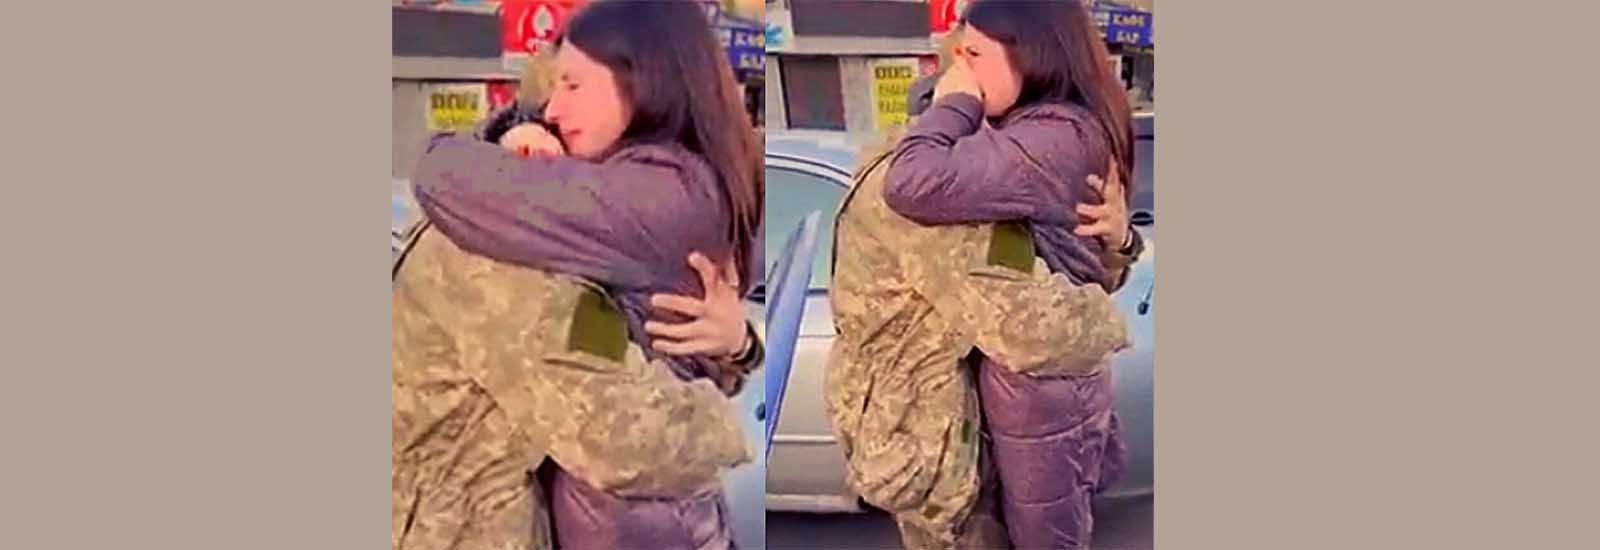 रूस के खिलाफ जंग लड़ रहे पति से मिली प्रेग्नेंट पत्नी, 7 महीने दूर रहने के बाद हुआ भावुक मिलन